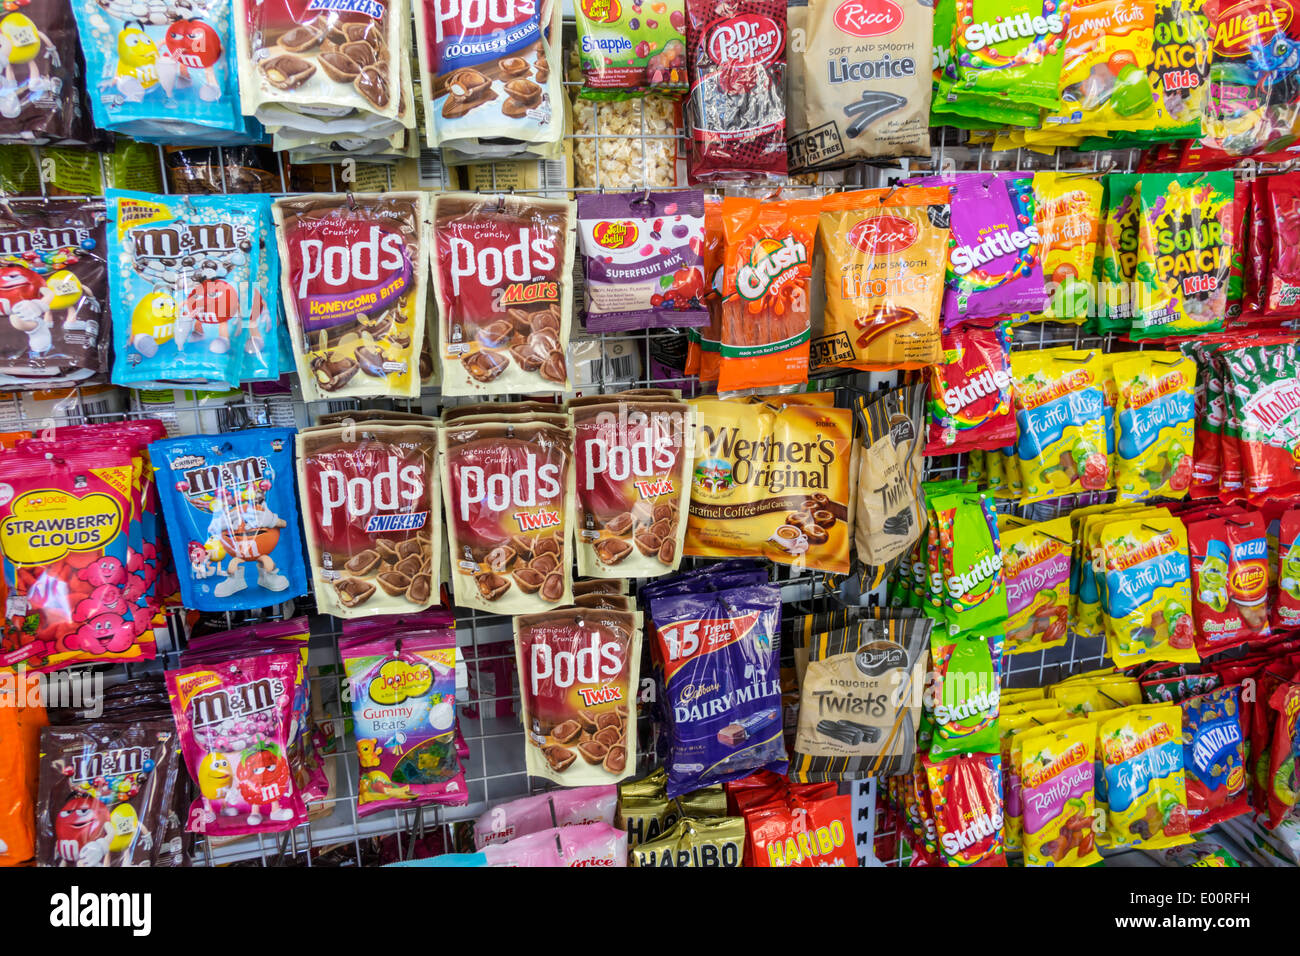 Candy brands immagini e fotografie stock ad alta risoluzione - Alamy